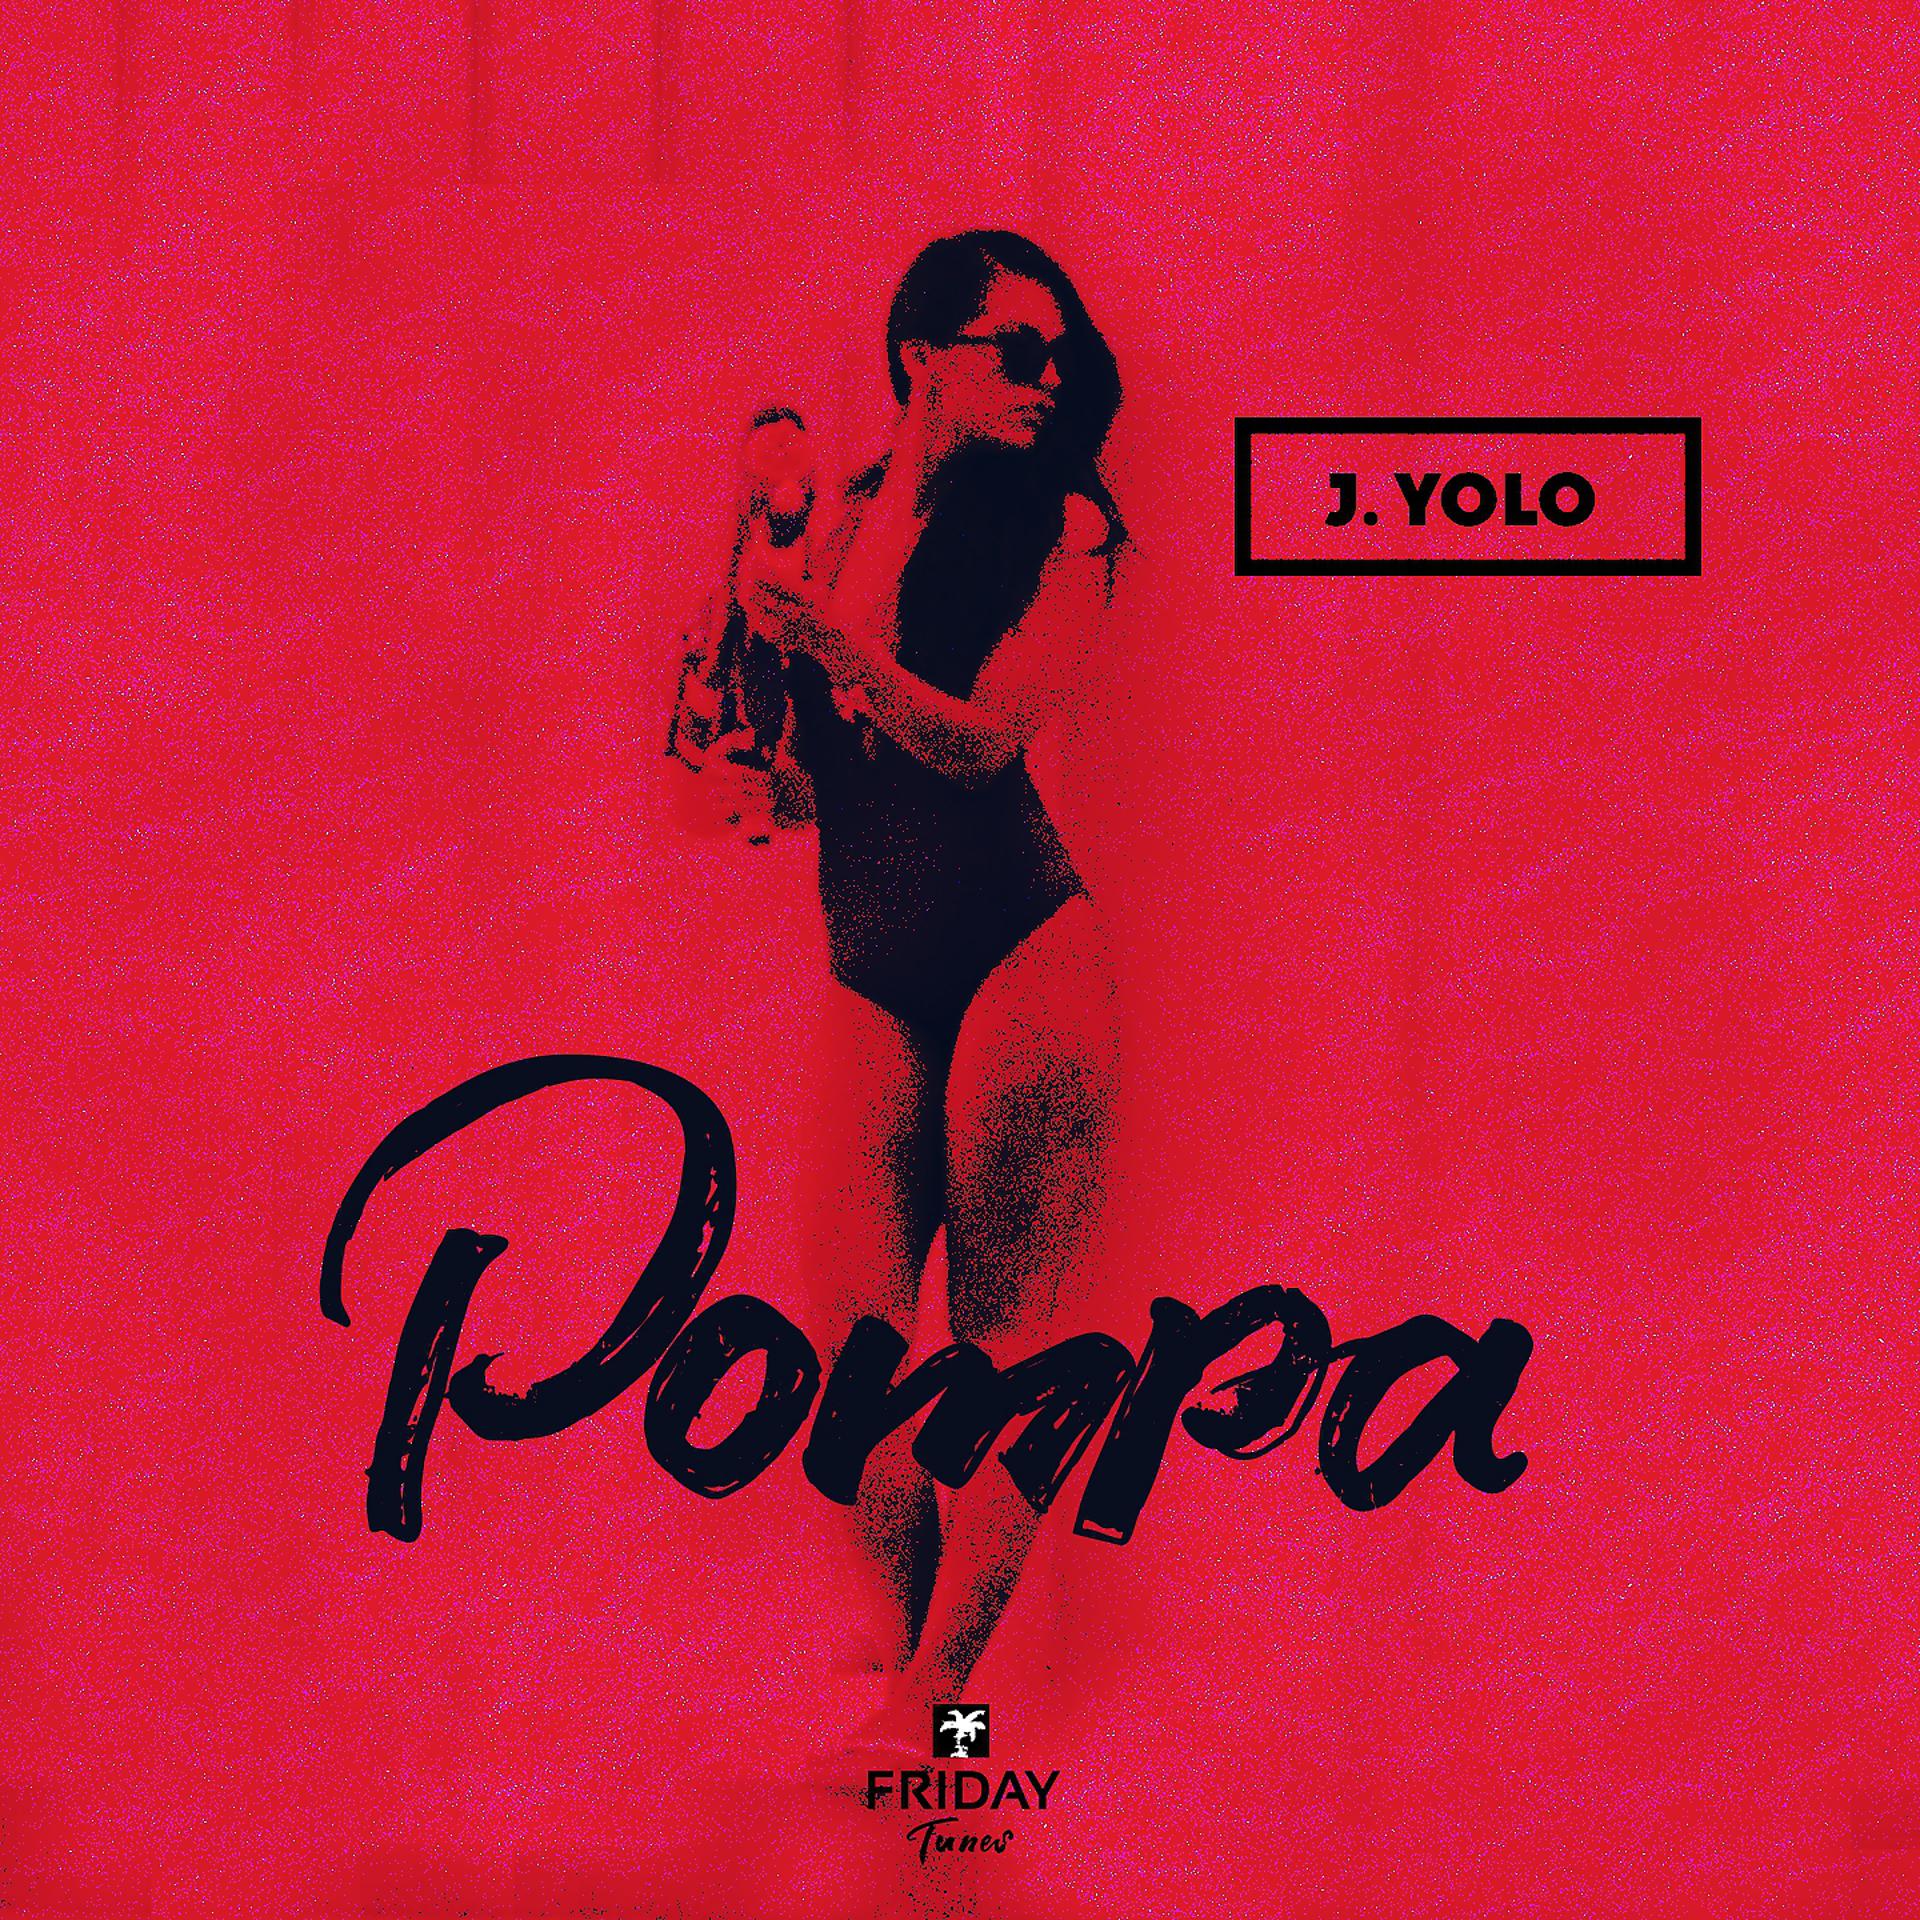 Постер альбома Pompa